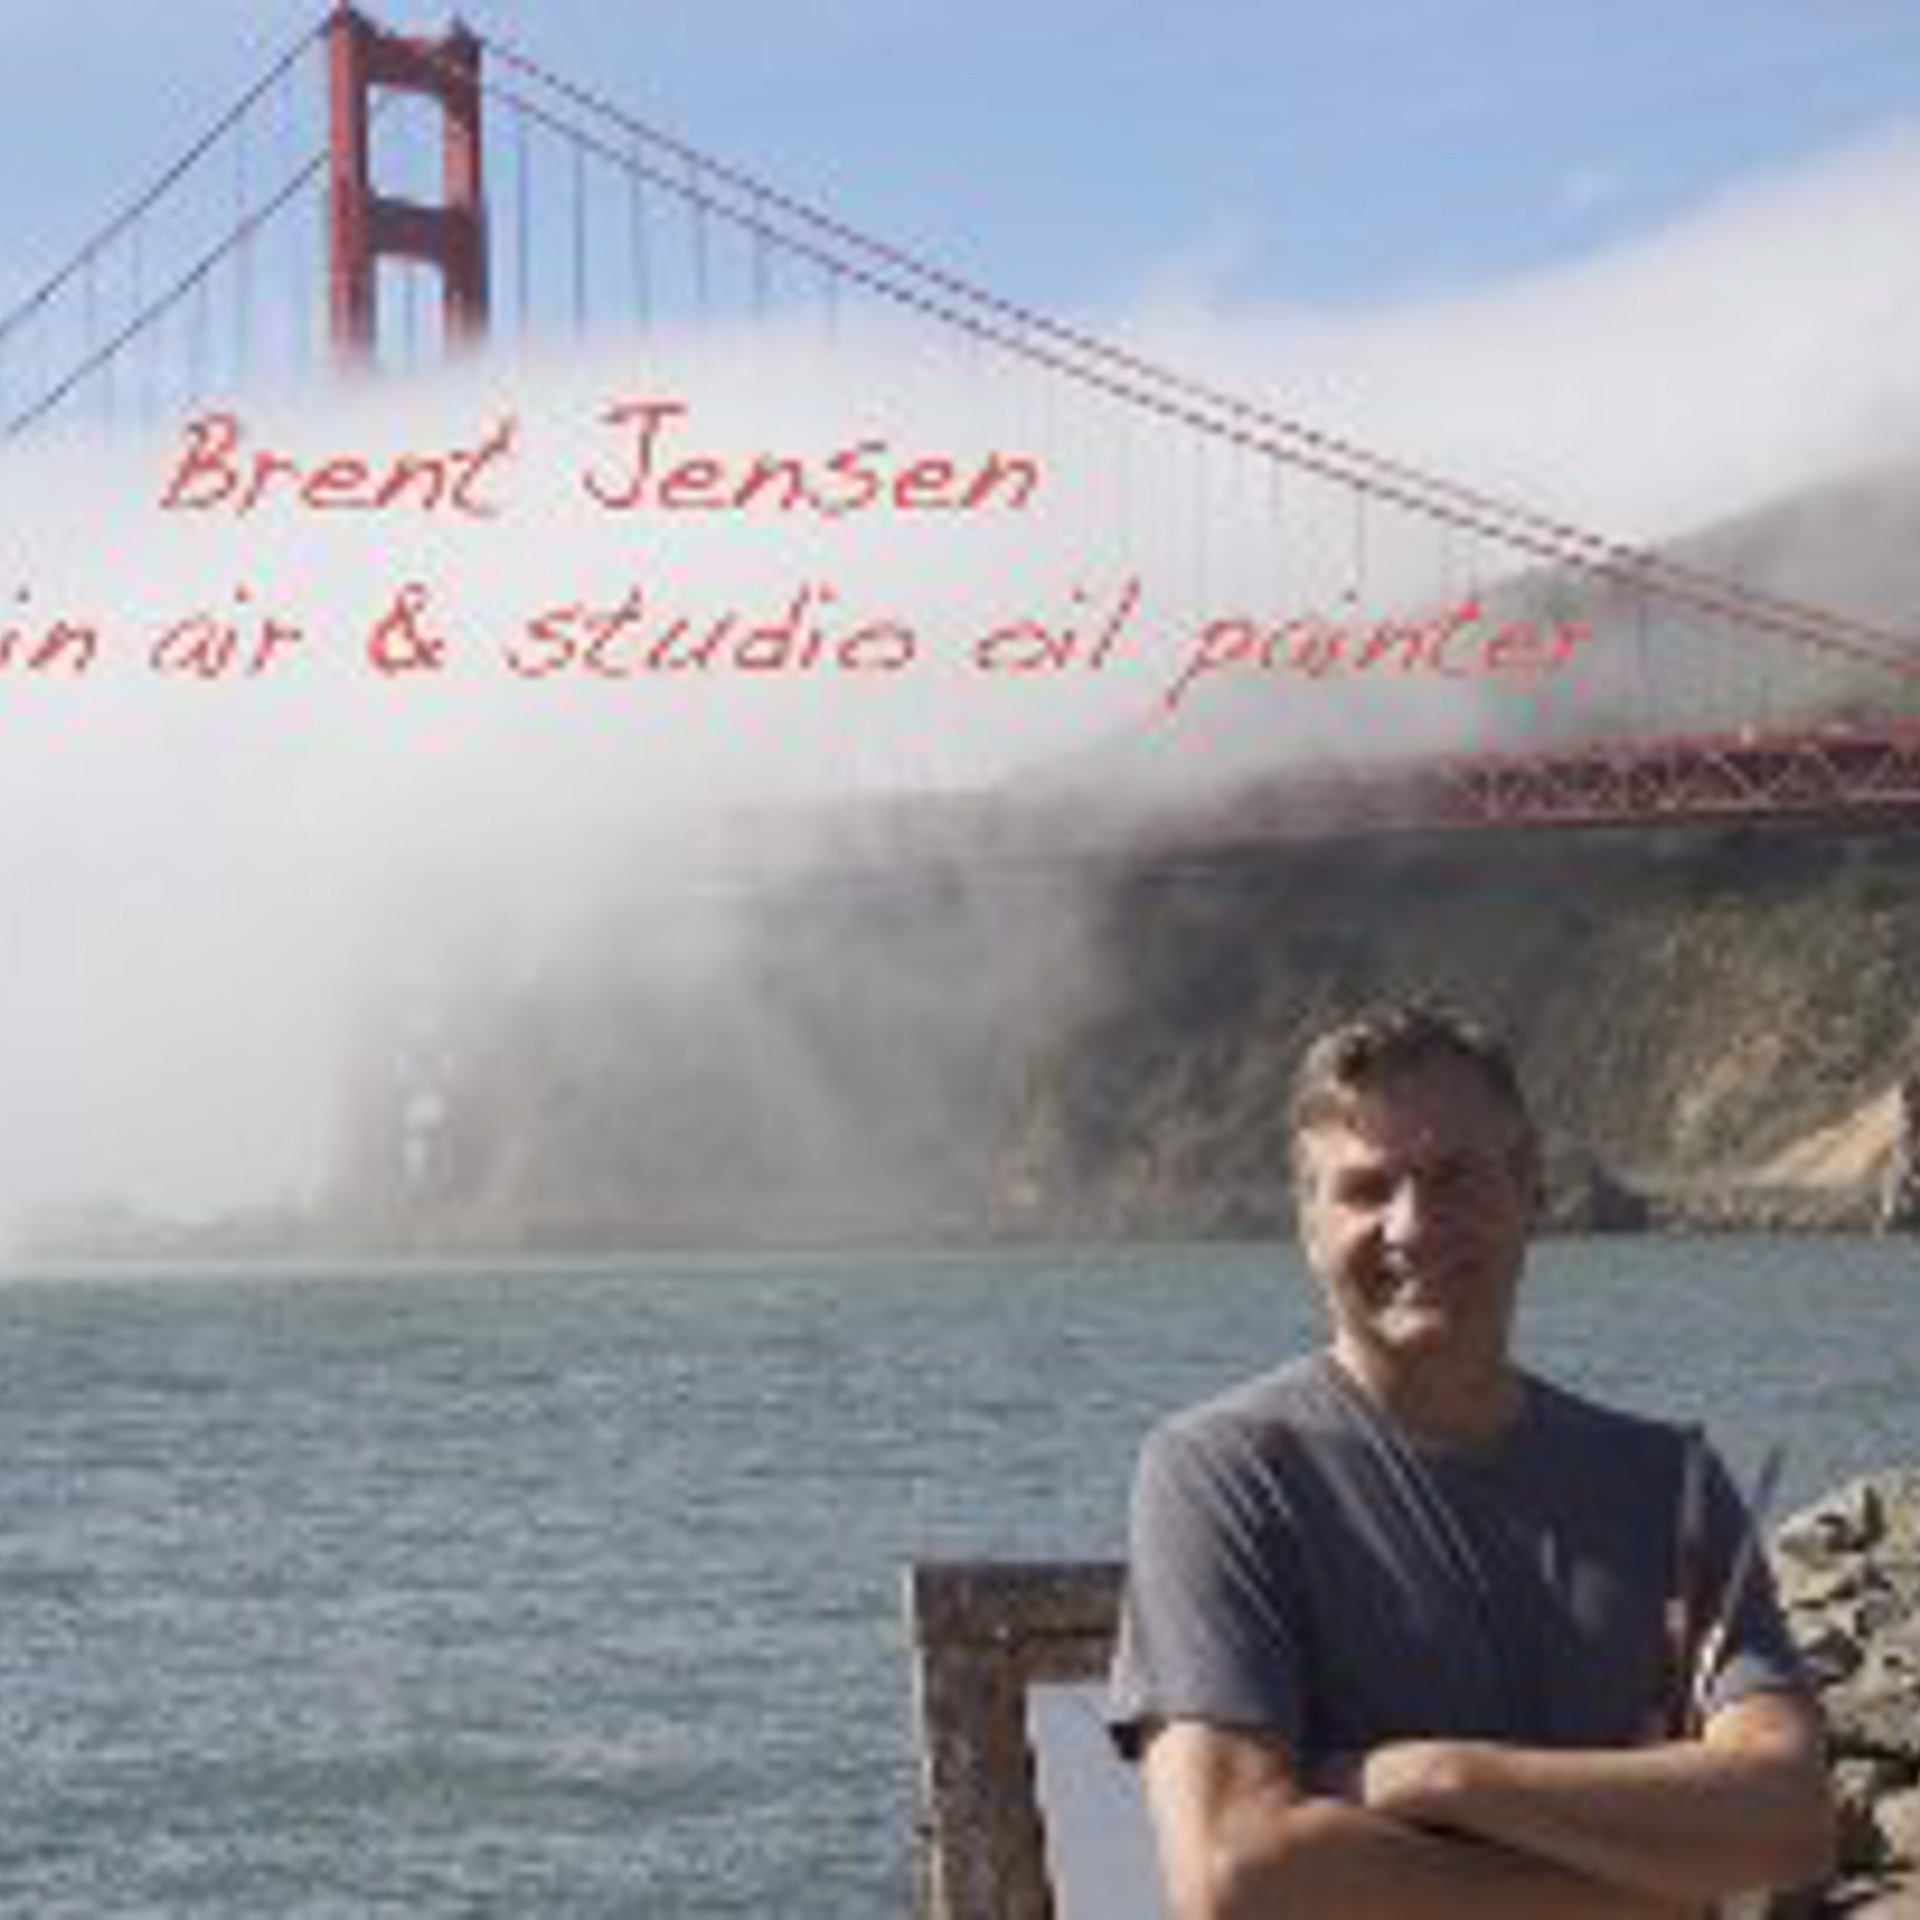 Brent Jensen